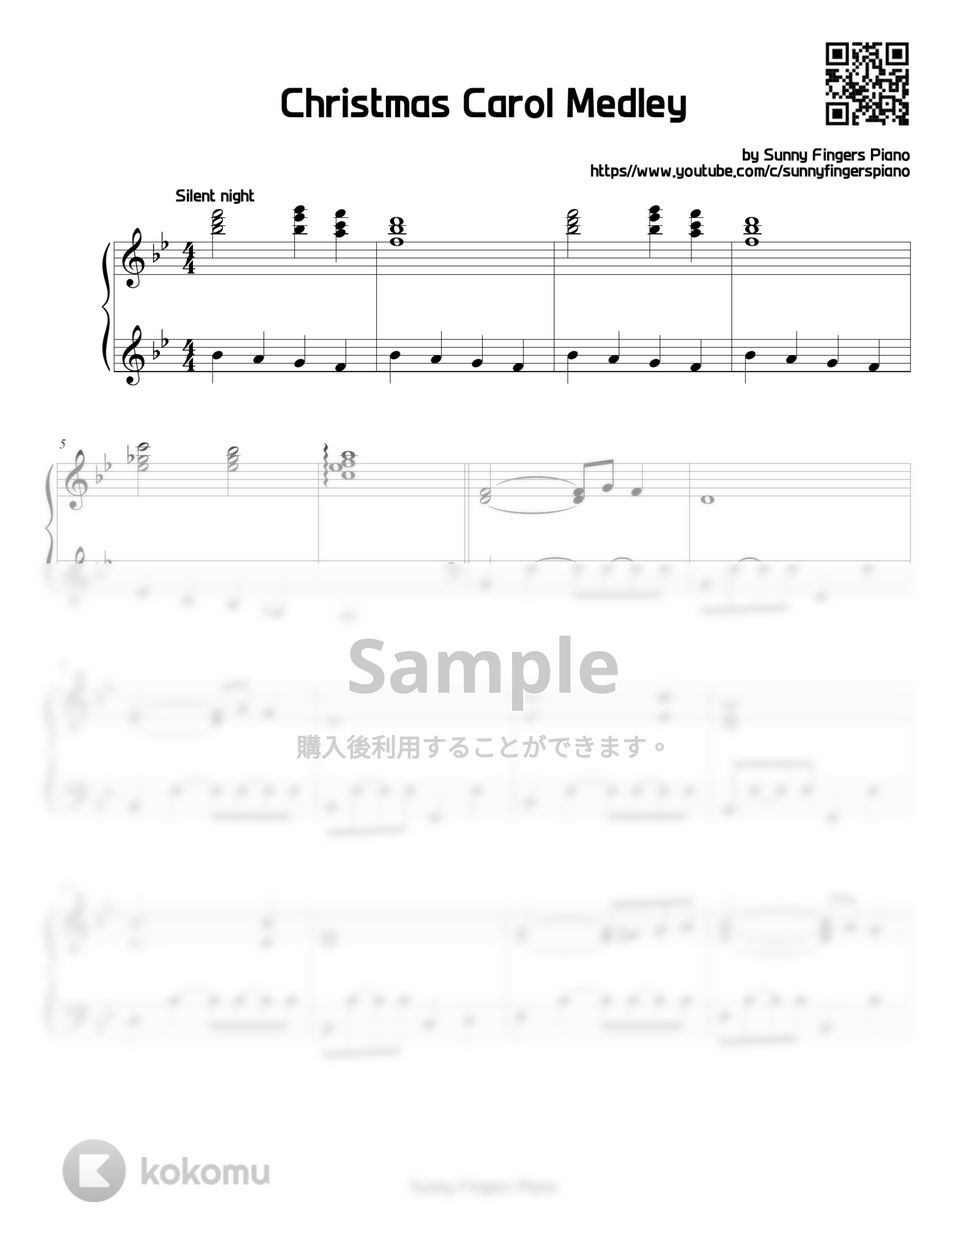 キャロルメドレー - クリスマス (オリジナル) by Sunny Fingers Piano